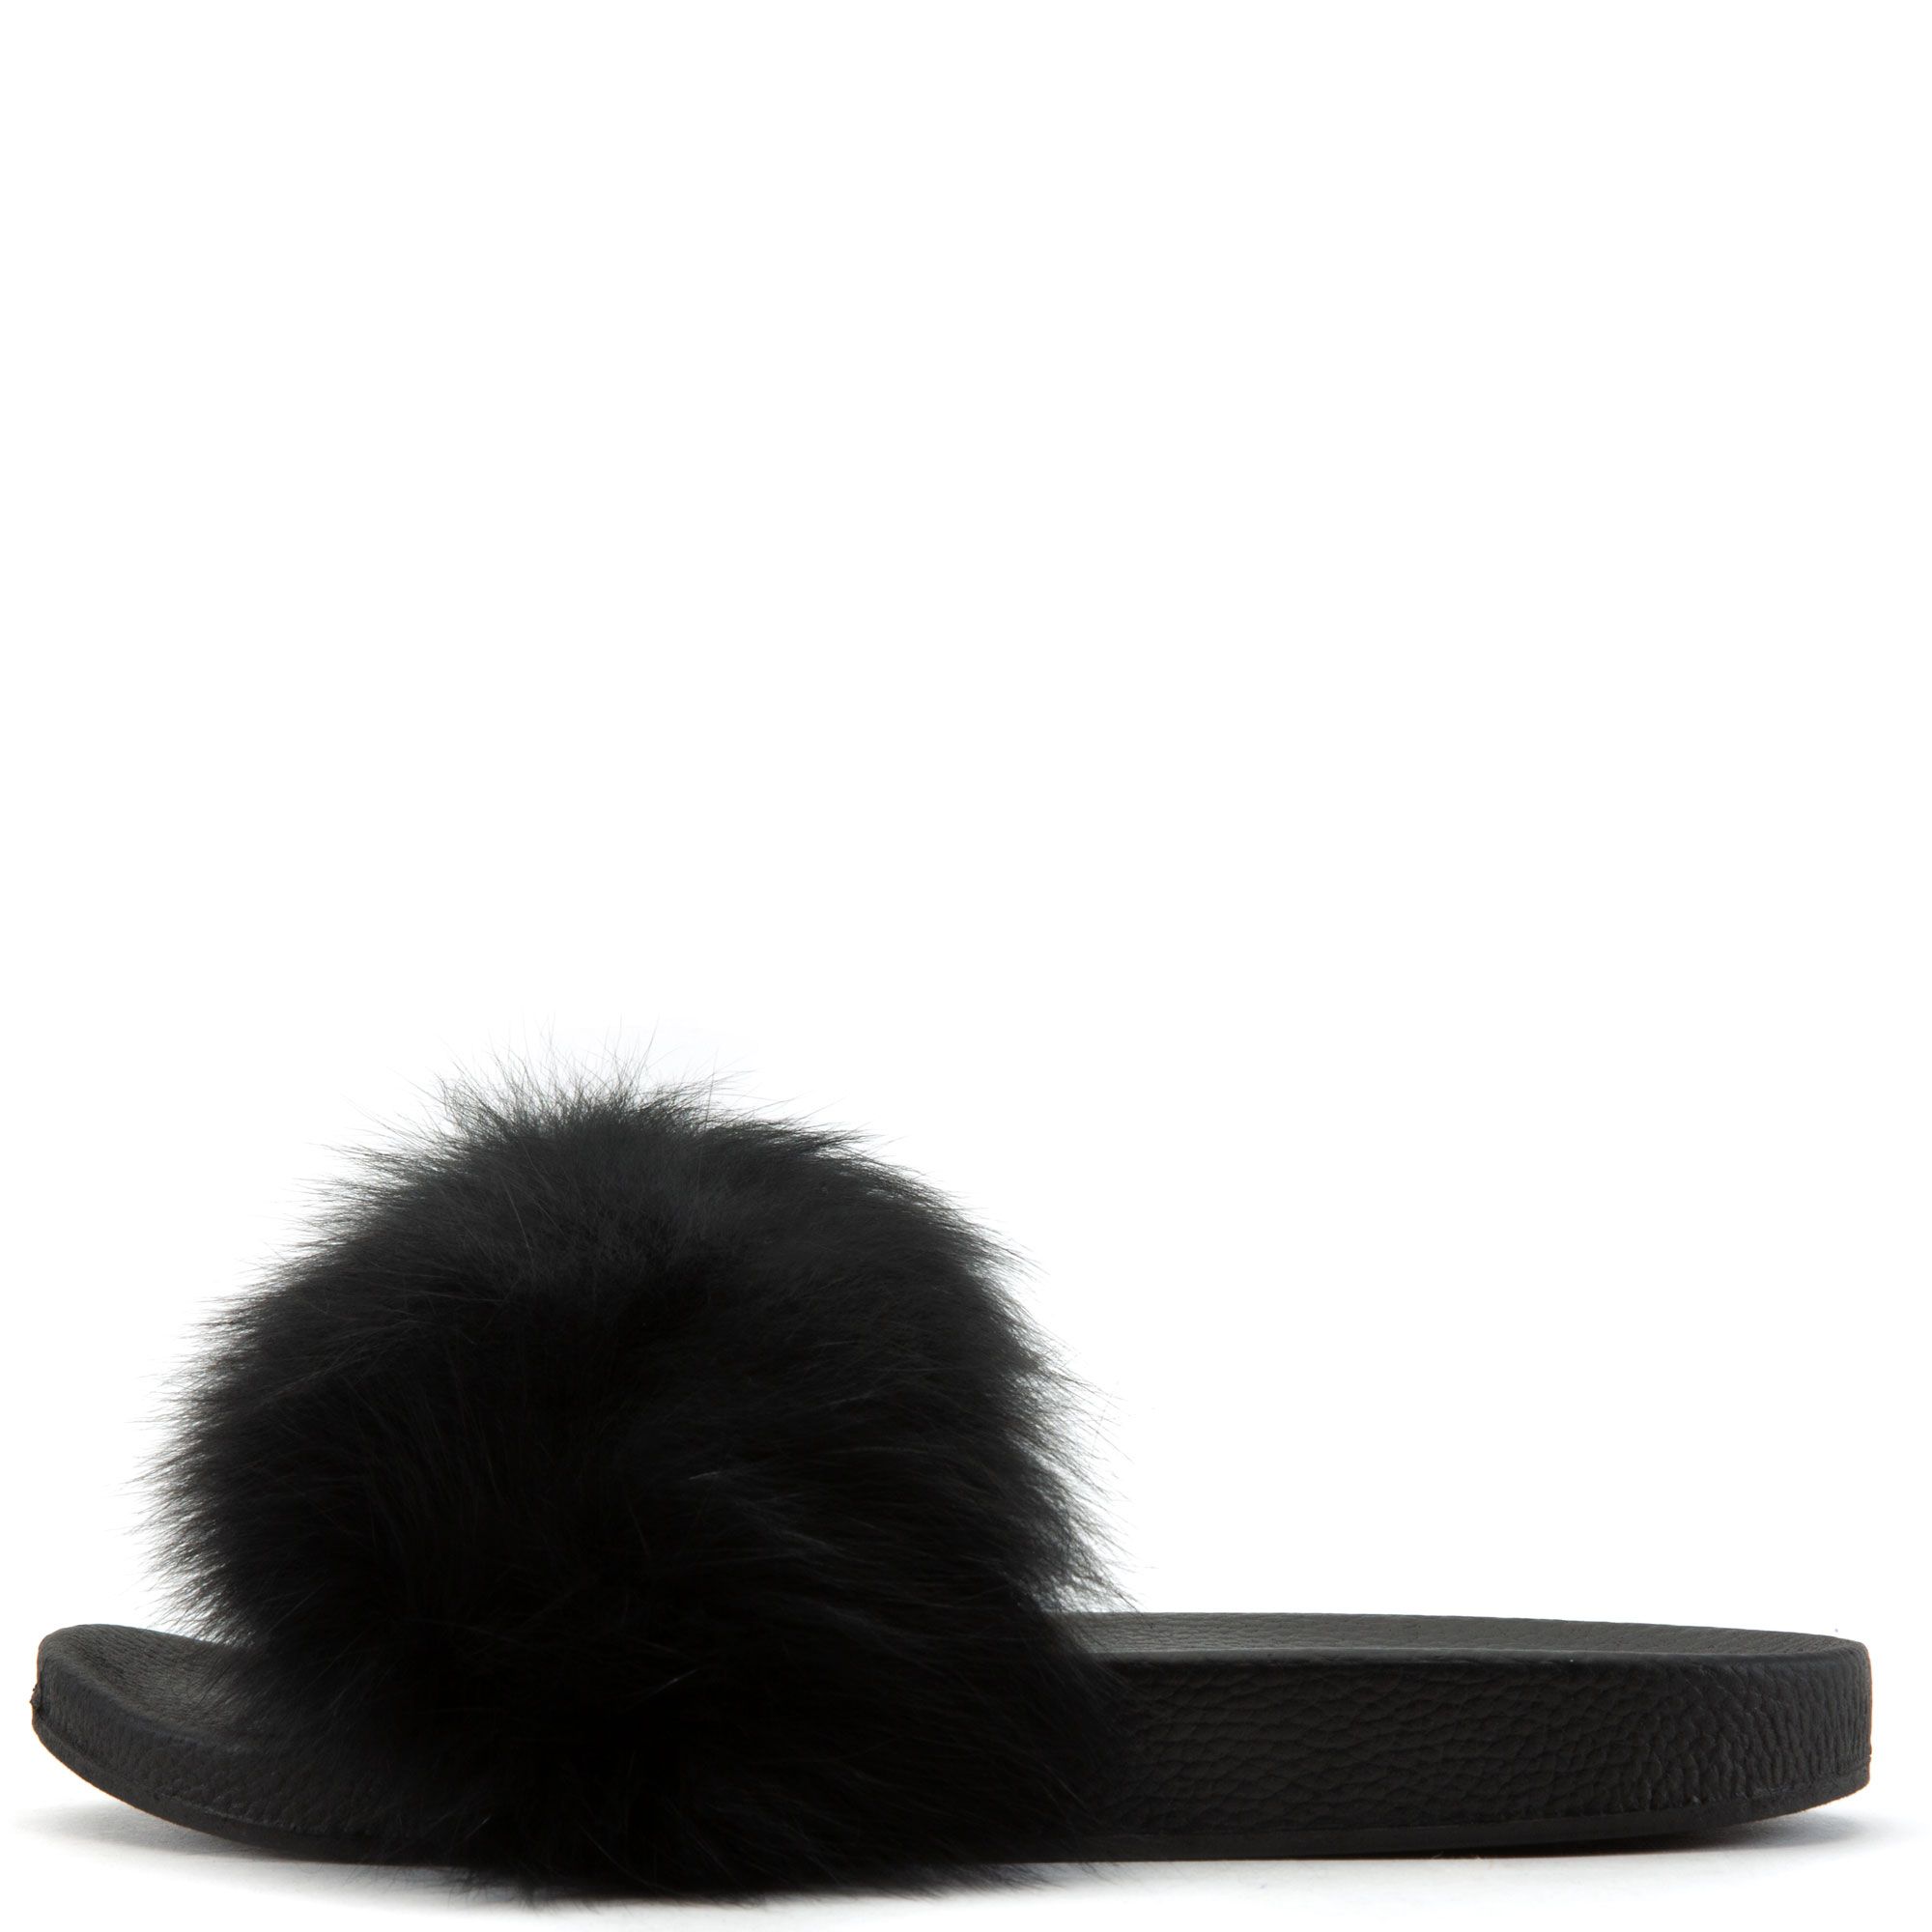 LEGEND FOOTWEAR INC Fanzzy-1 Fur Slides FANZZY-1-BLK - Shiekh